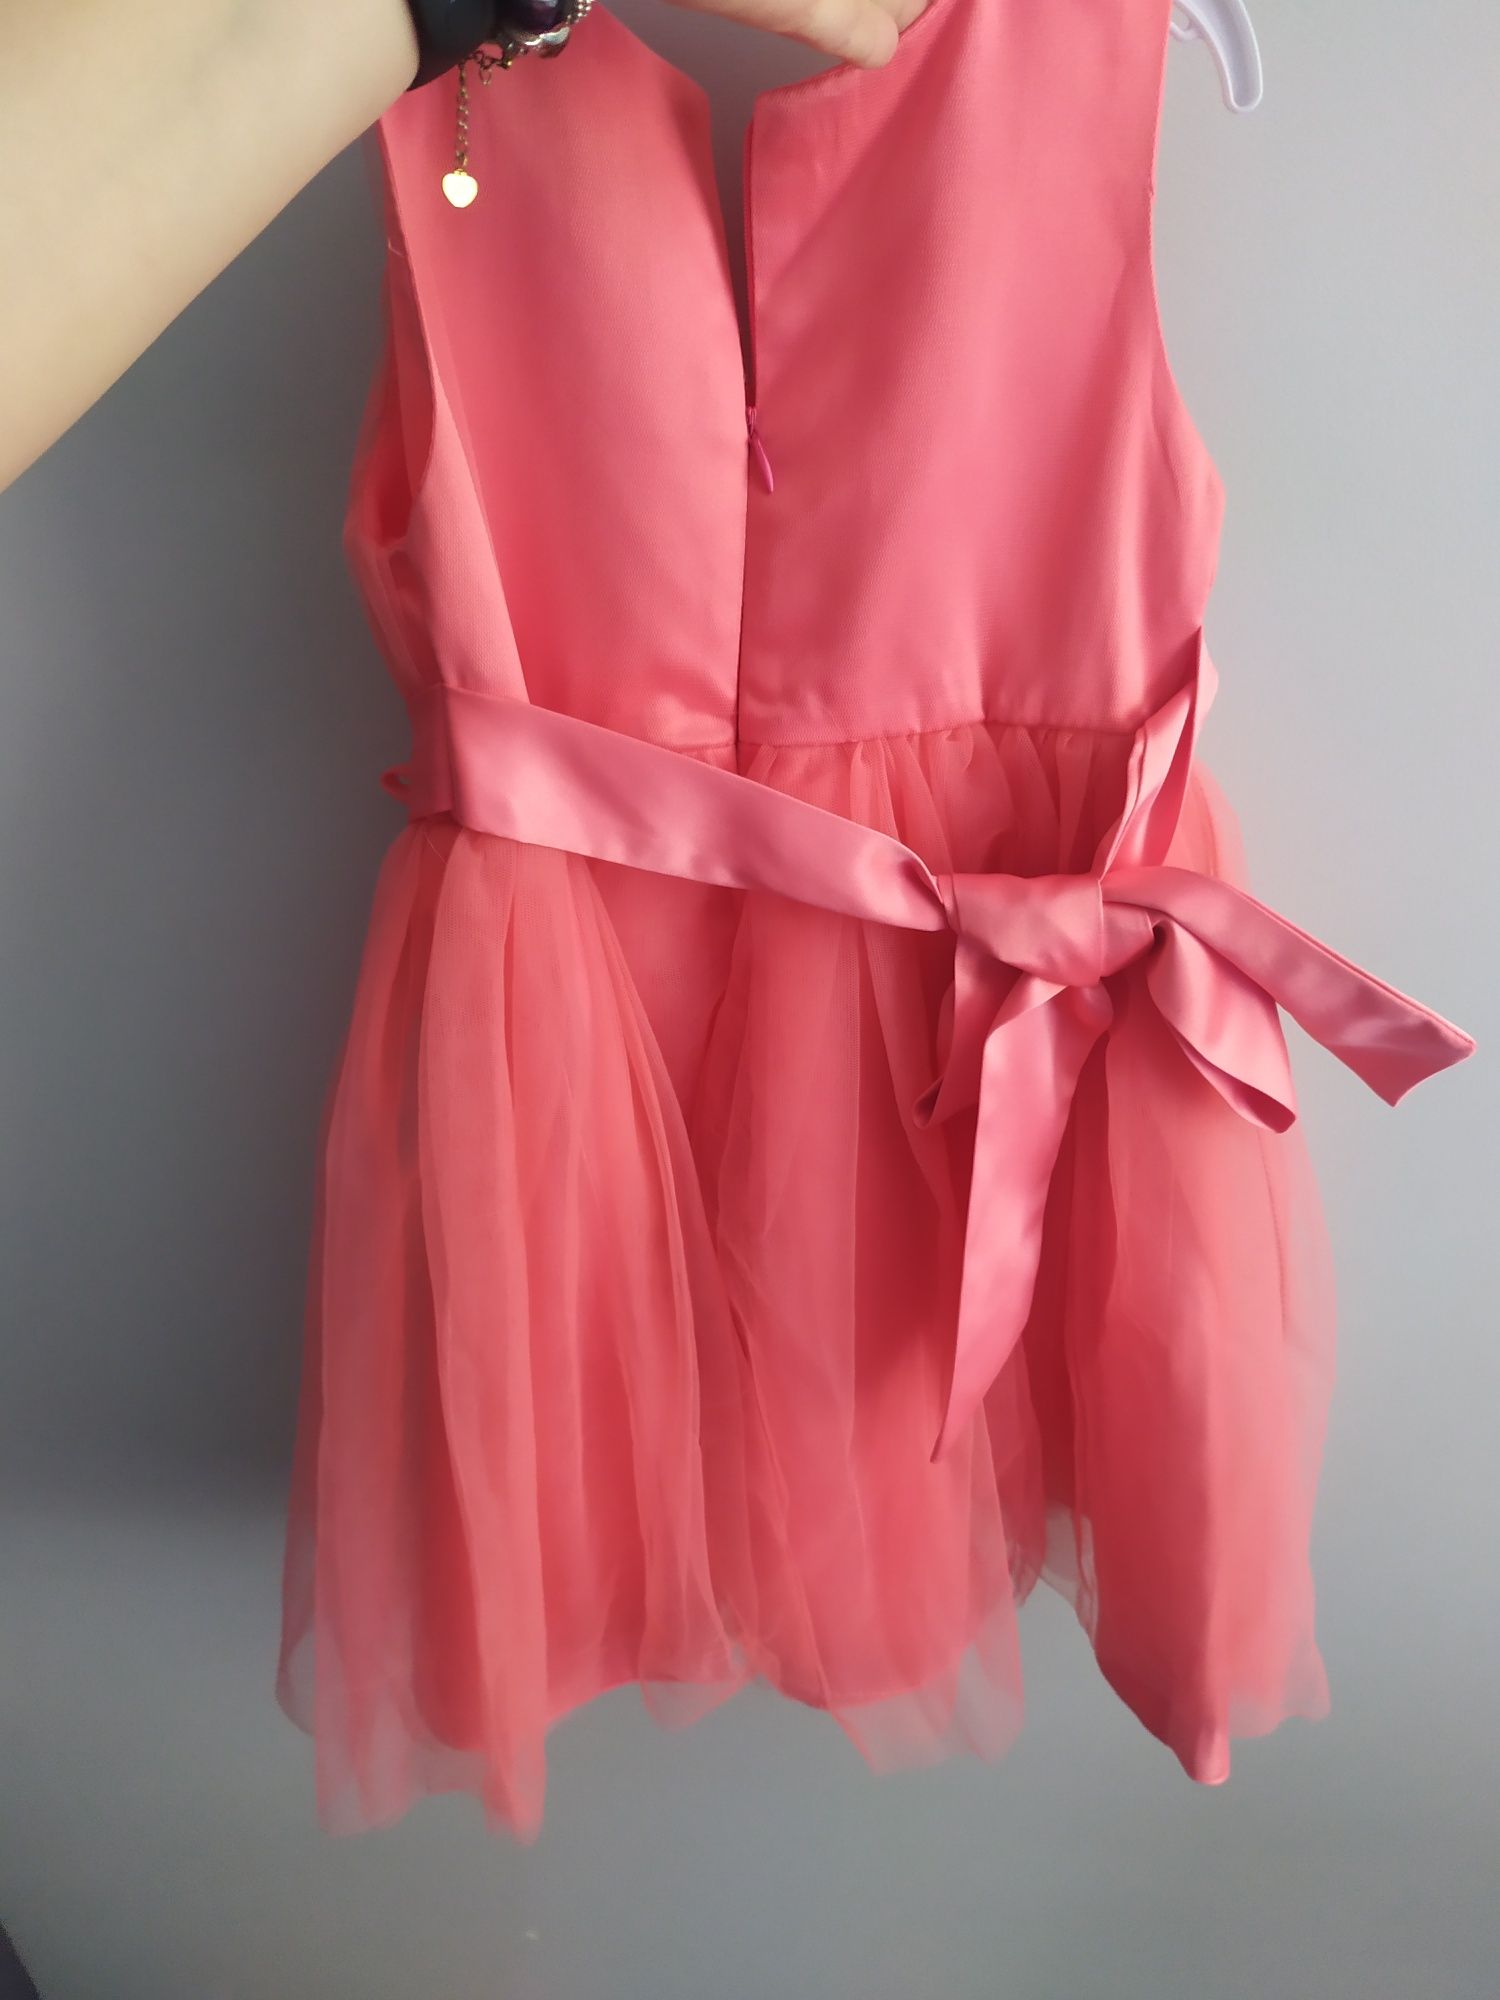 Piękna tiulowa arbuzowa sukienka neon weselna dla księżniczki 104/110